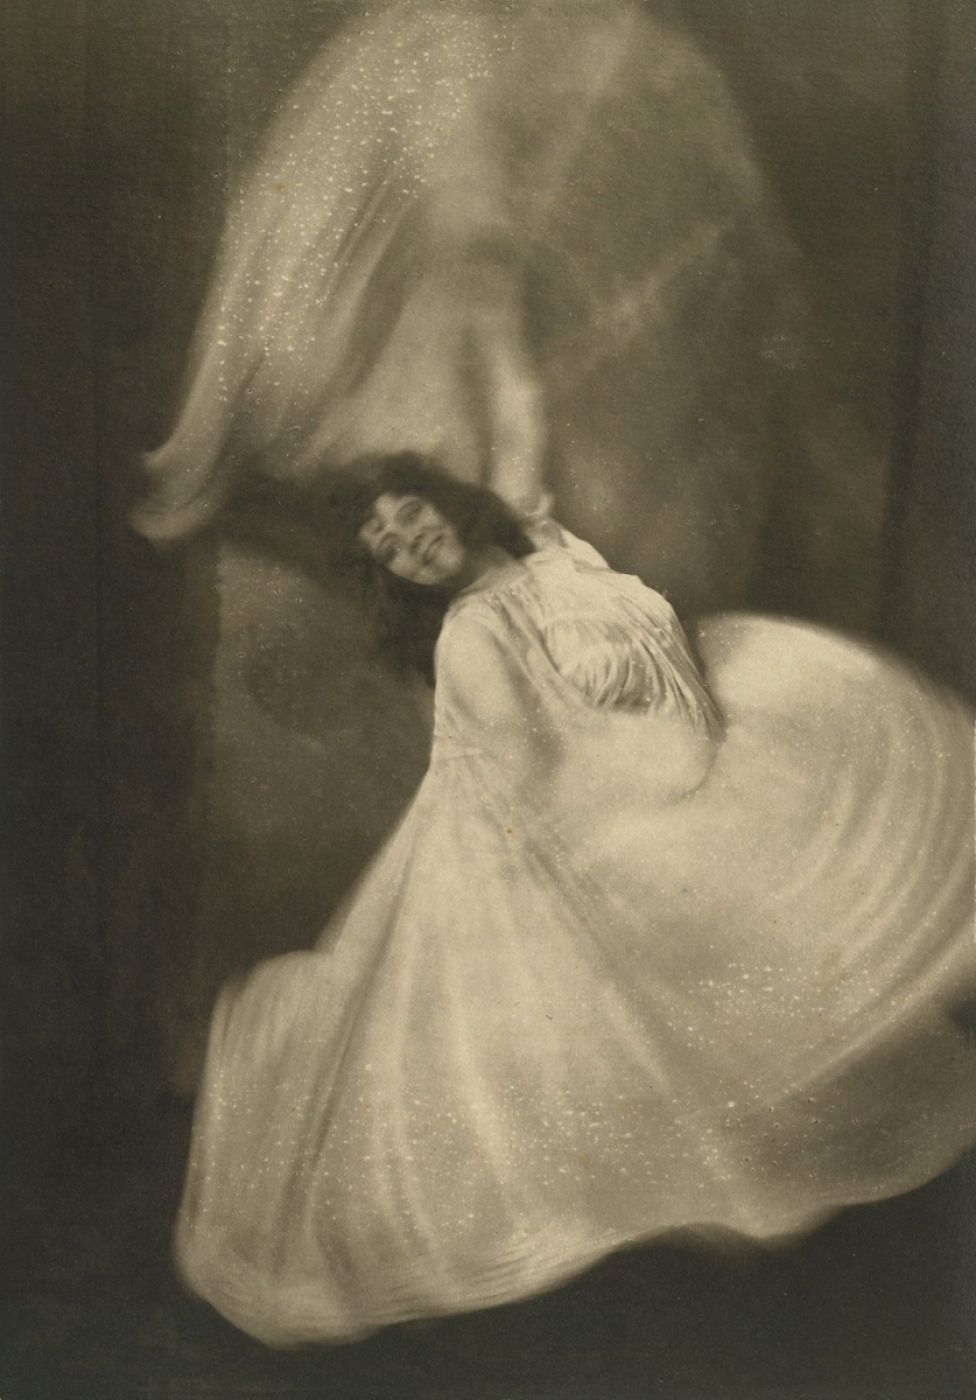 R. Moreau, “The dance of Loïe Fuller”, 1908